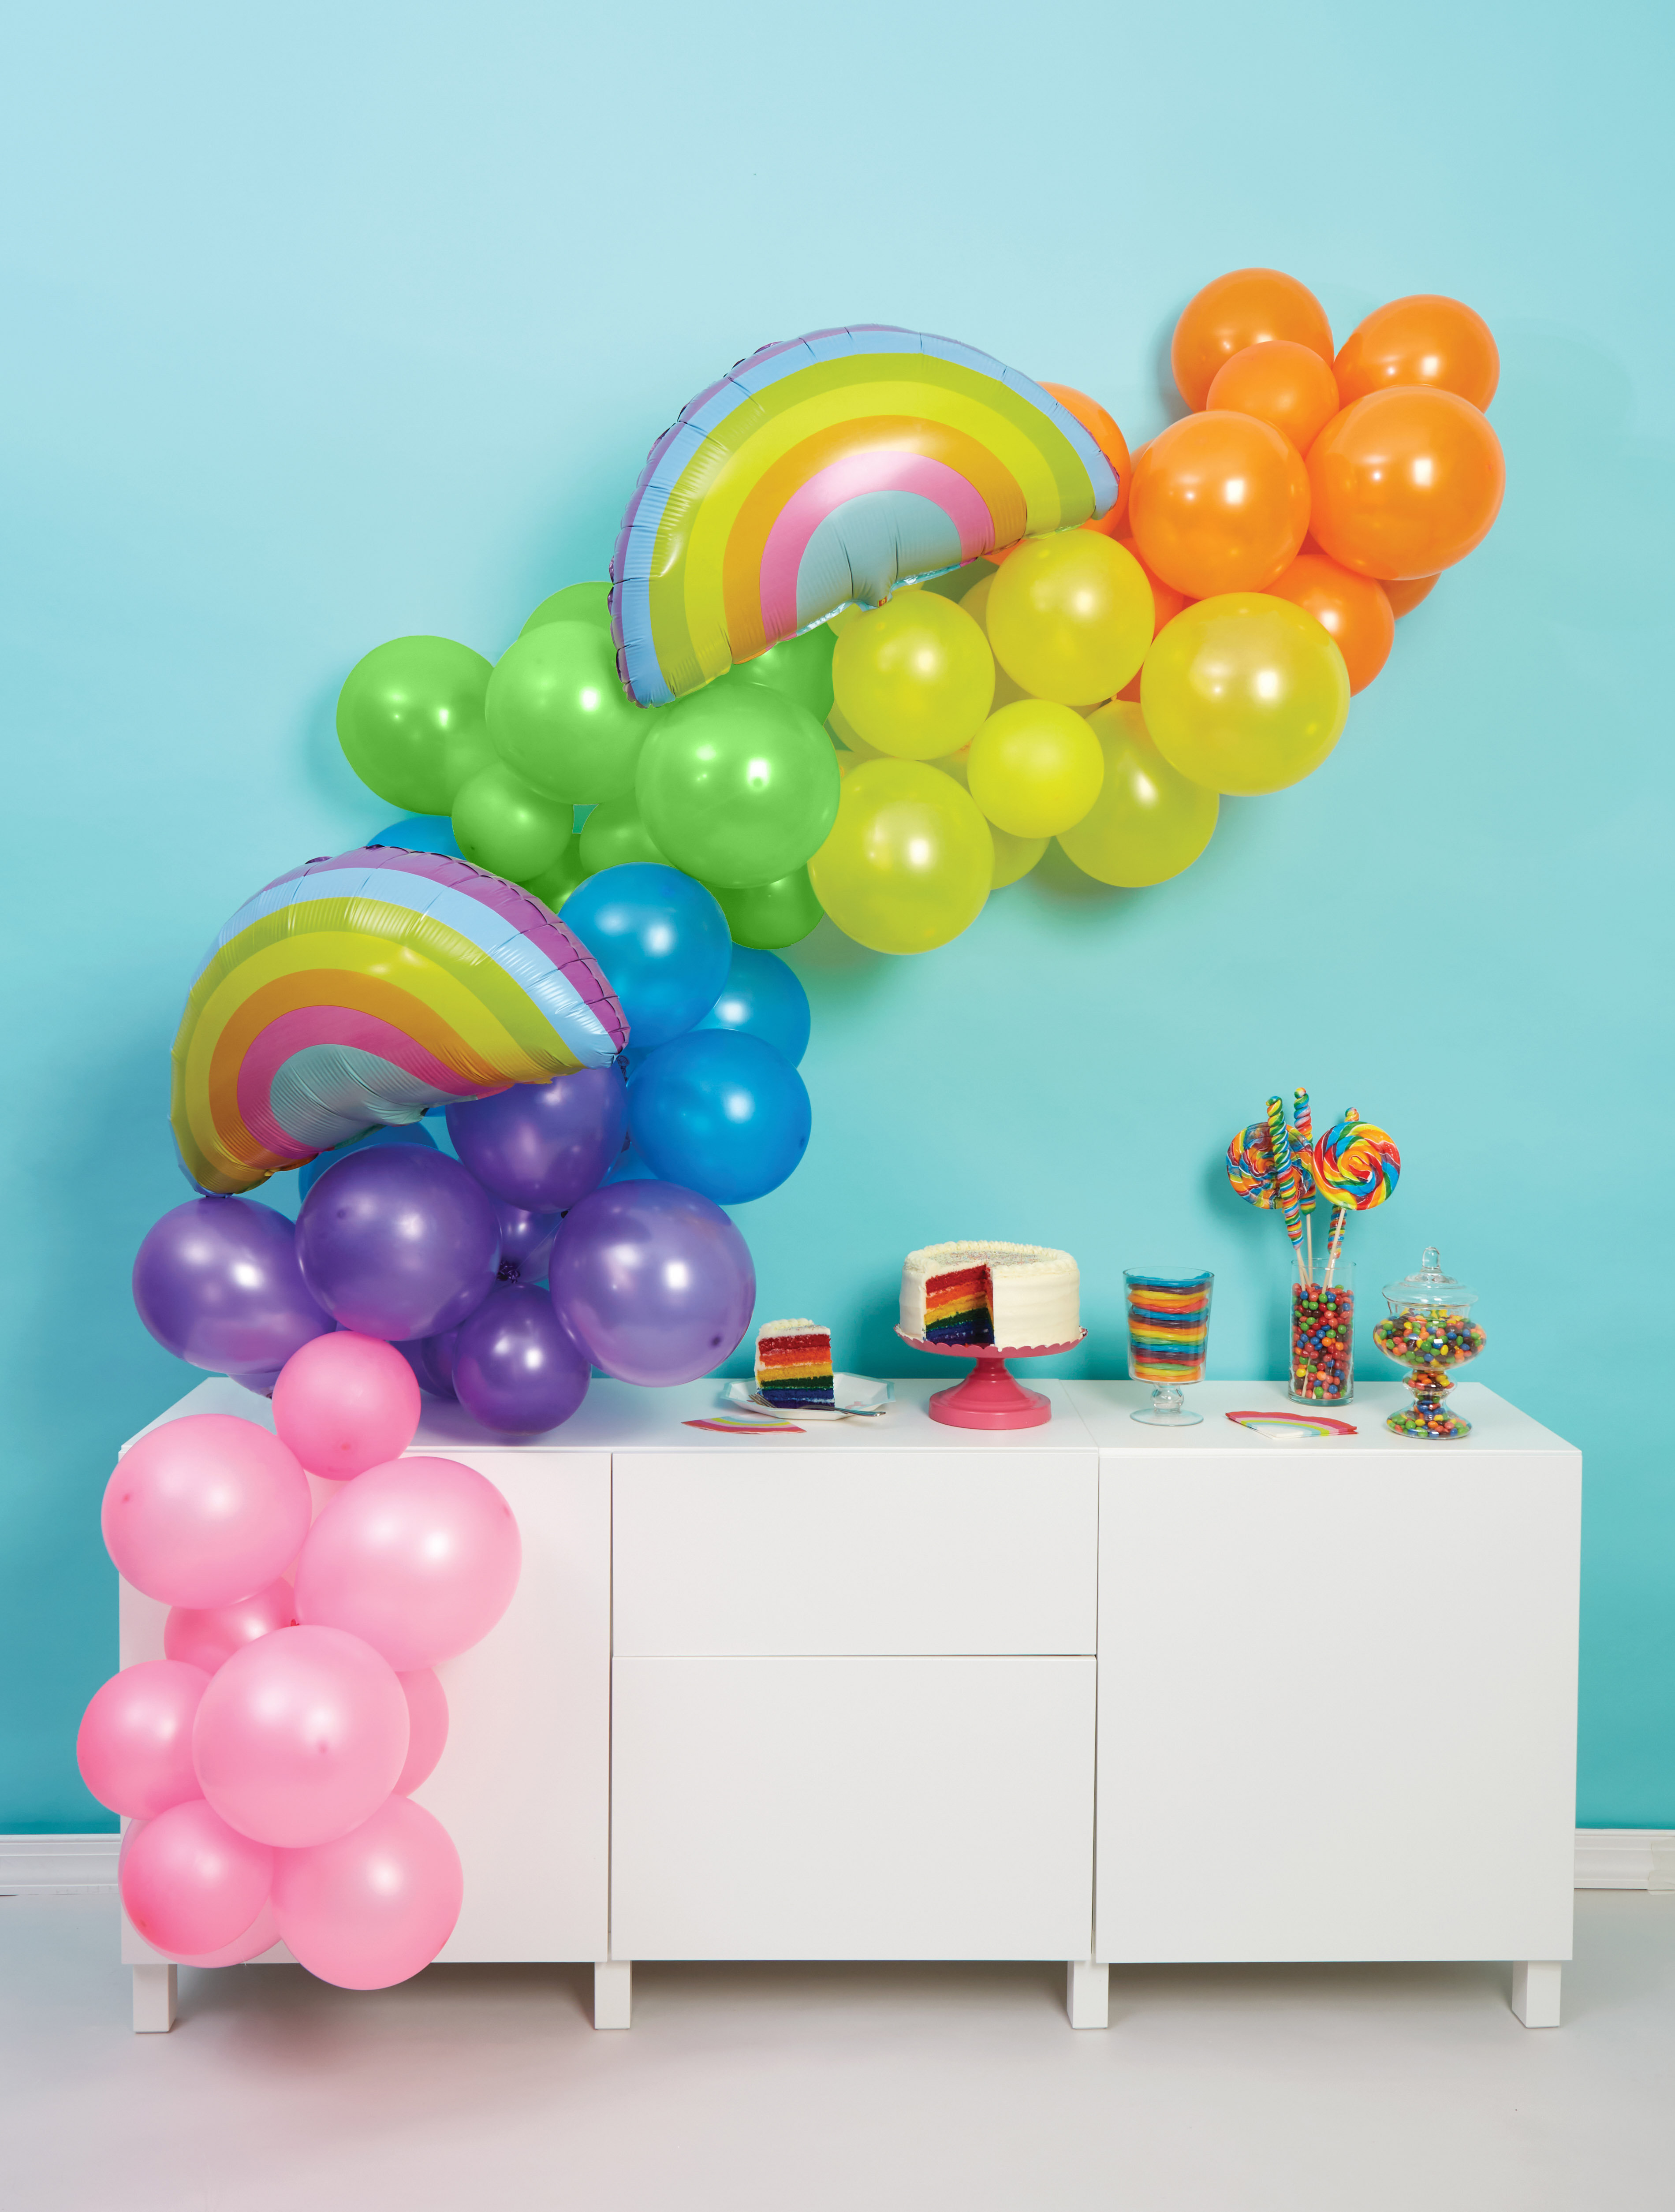 SPECOOL Pastel Balloon Arch Kit, Balloon Garland Rainbow Party